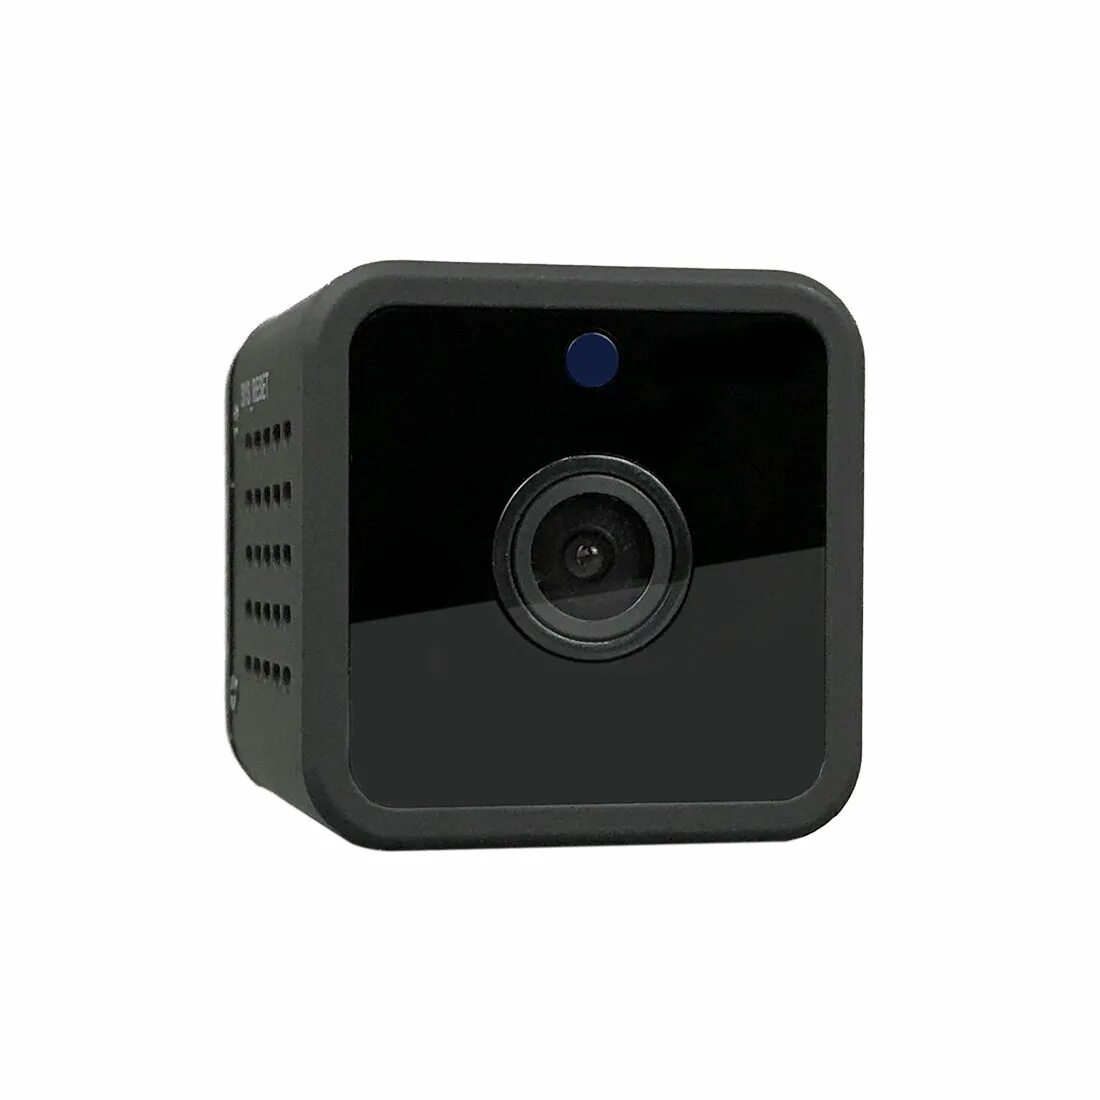 Камера cube. Wi-Fi мини камера WIFICAM F-cam. Мини камера TT cam. Мини камера для видеонаблюдения c Wi-Fi md26 (черный). Камера Cube Network Camera 8017.